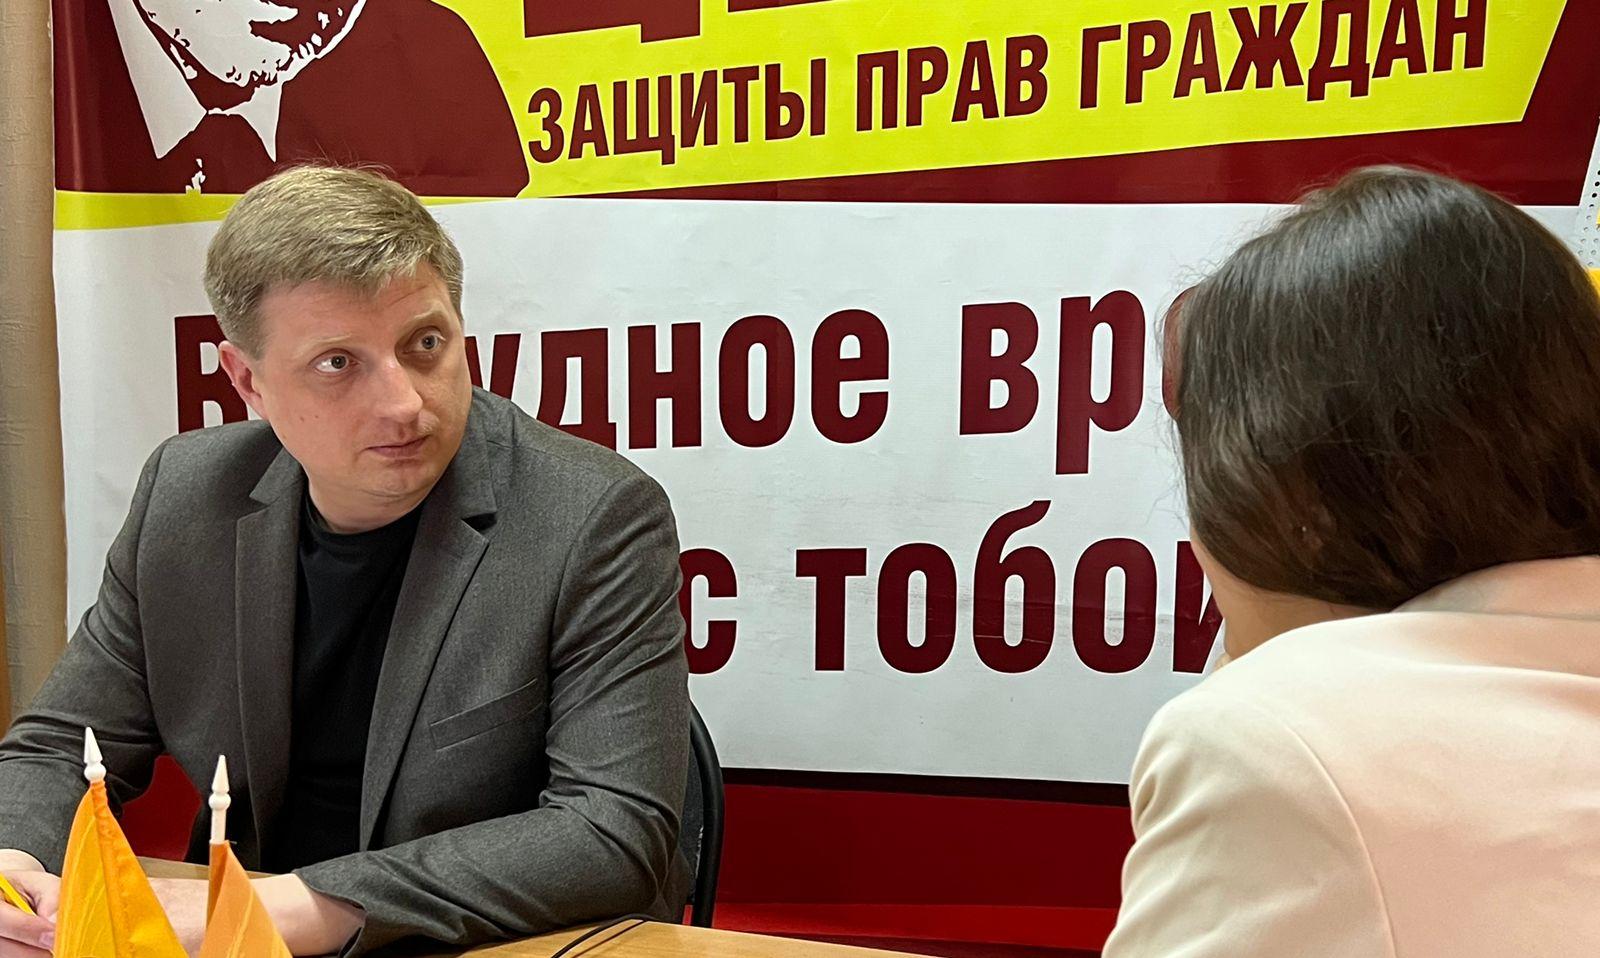 Алексей Кожухов одержал победу на довыборах по 31 округу в...